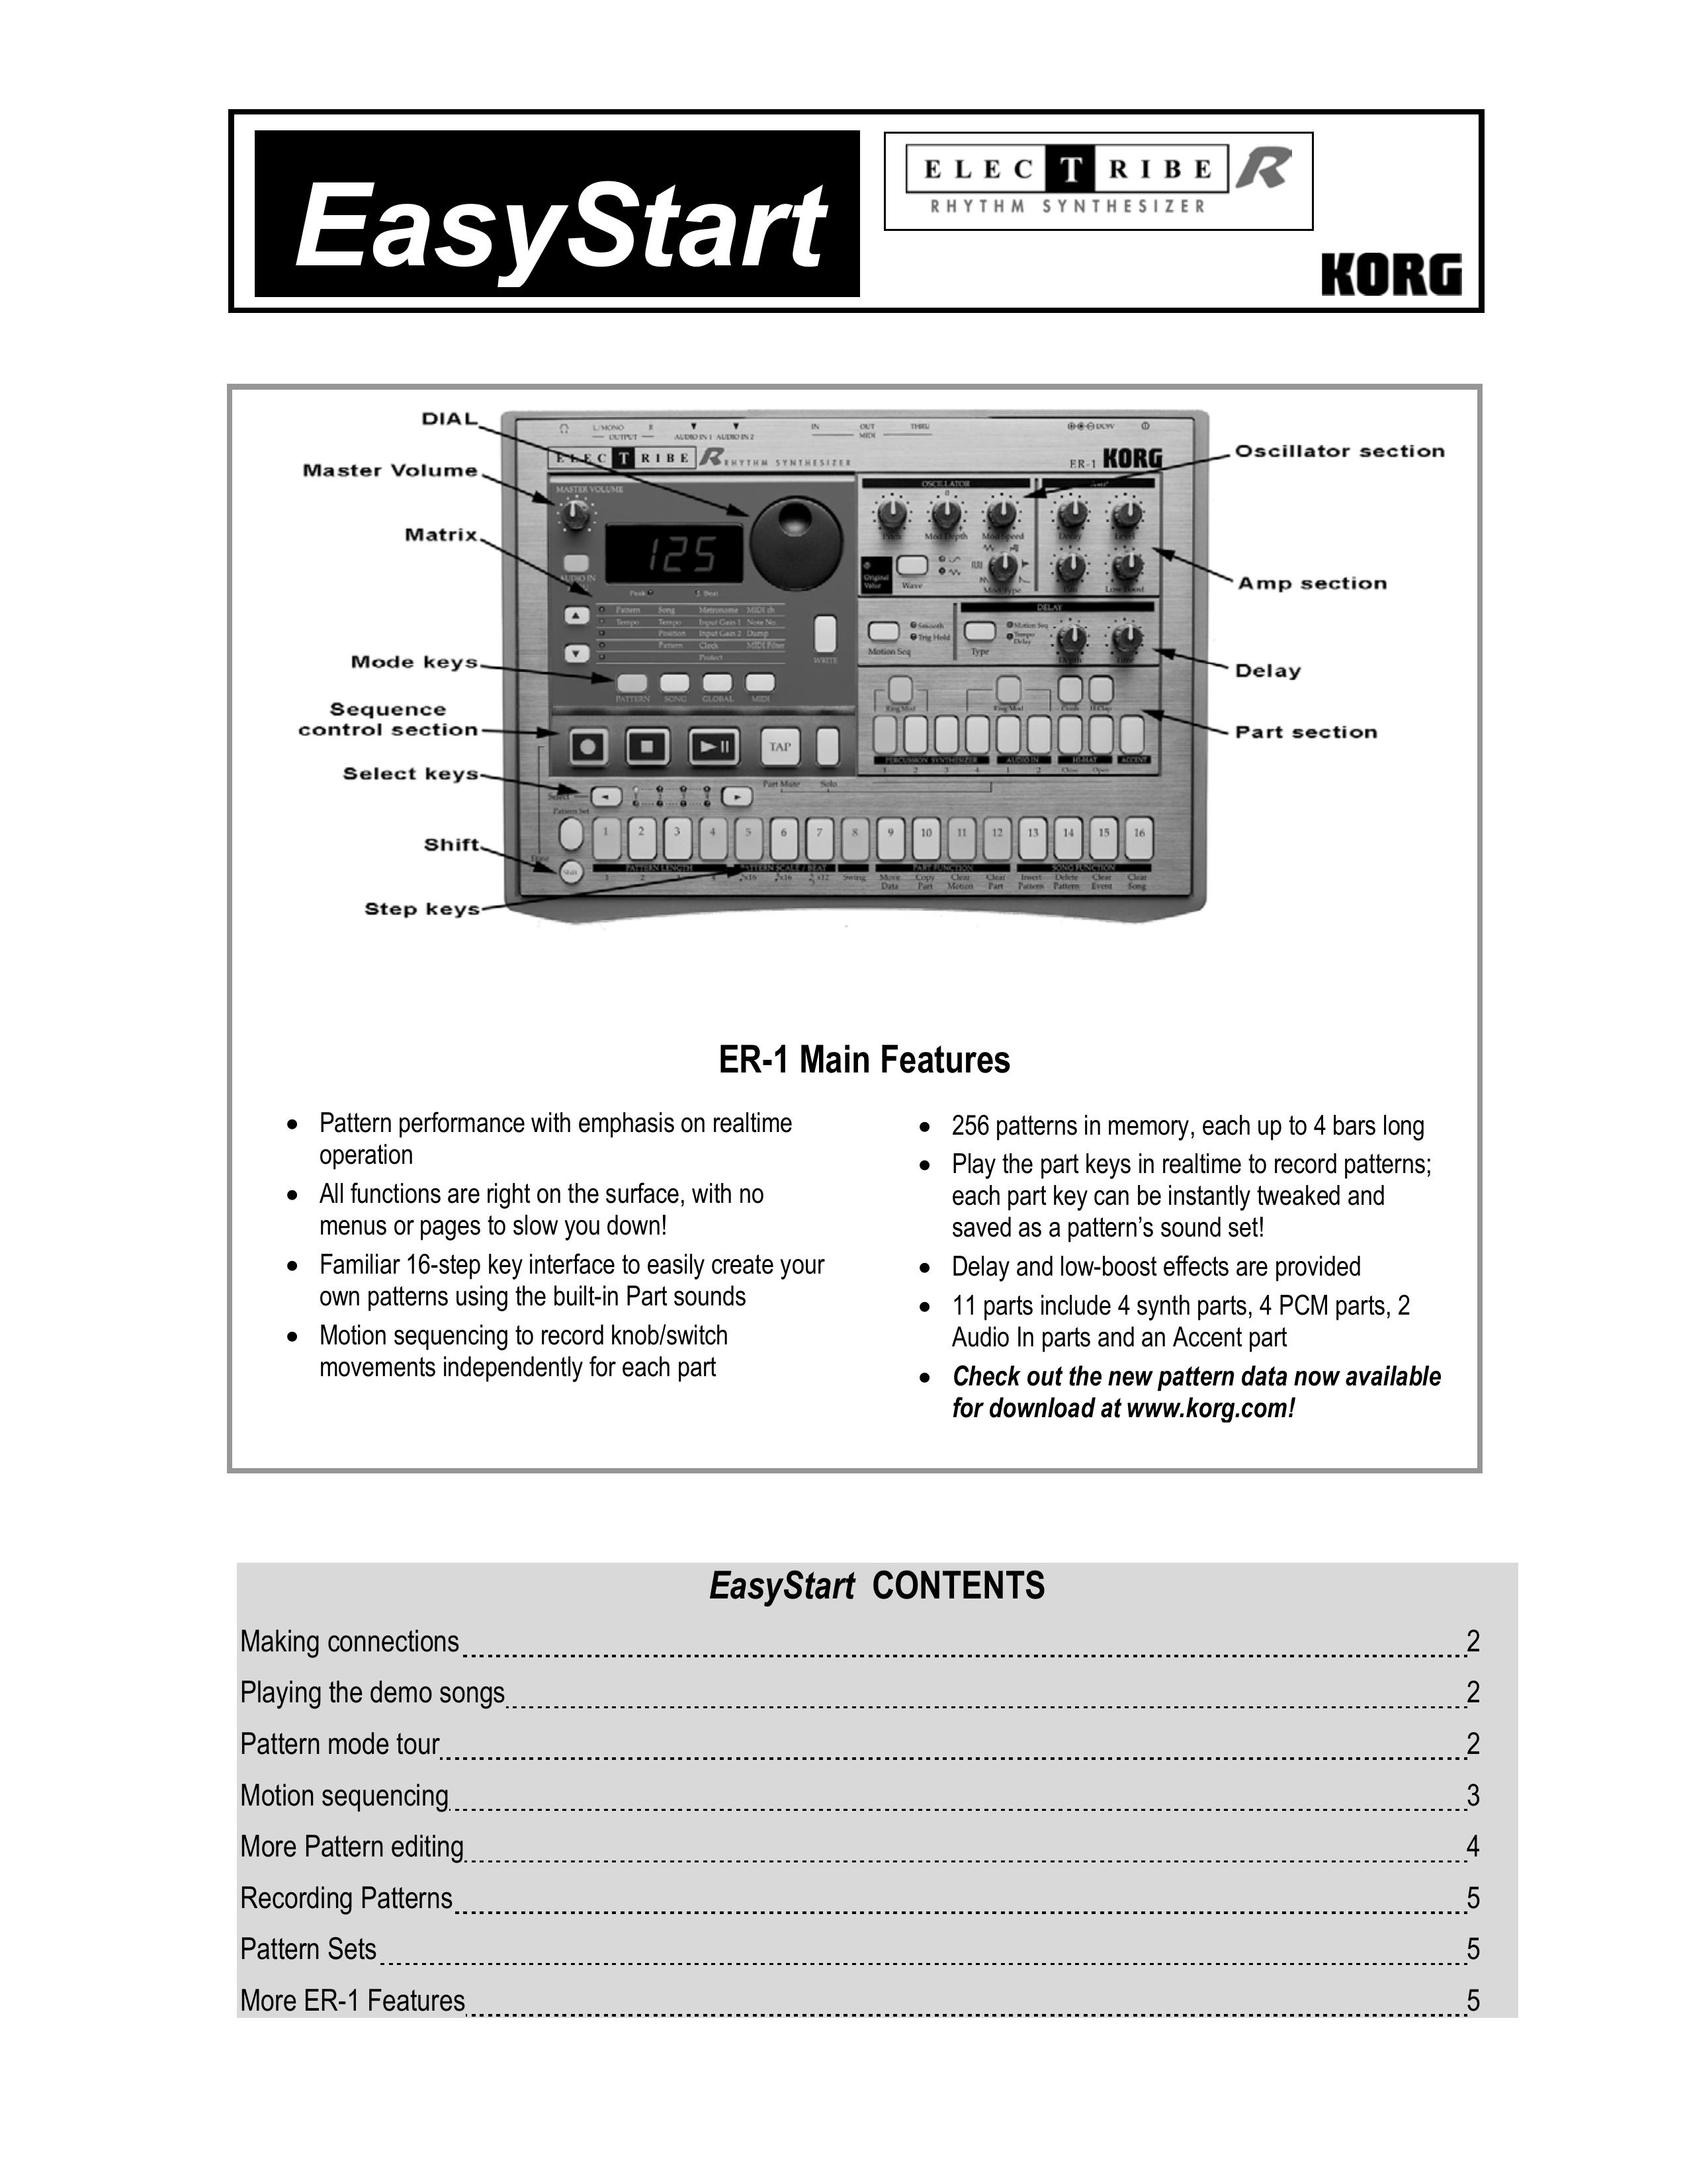 Korg ER-1 Recording Equipment User Manual